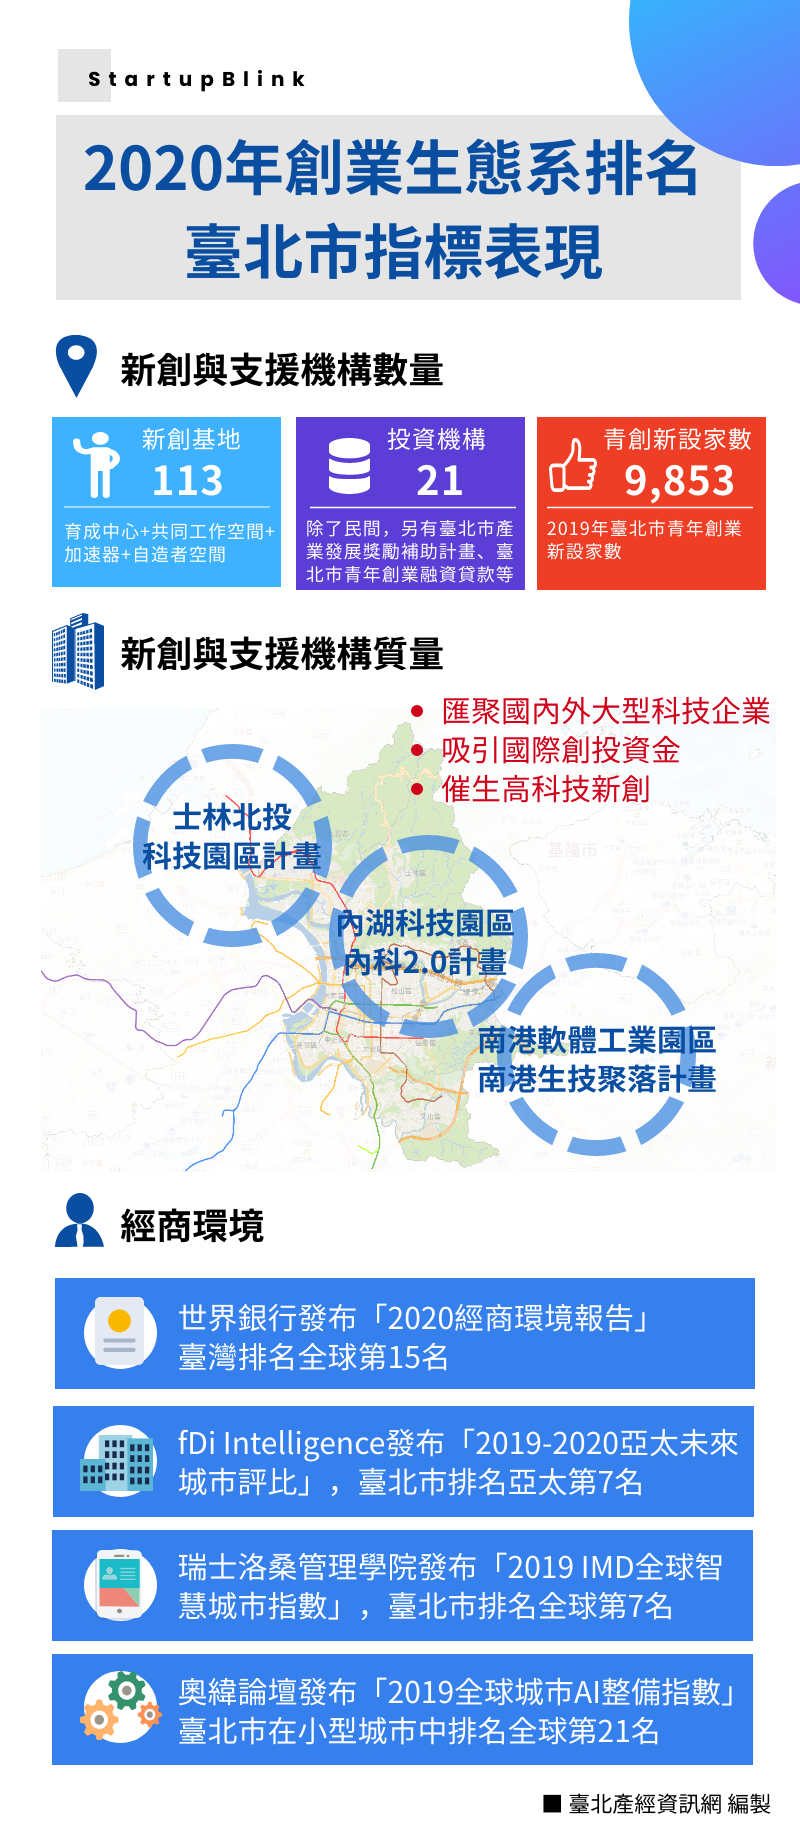 2020年創業生態系排名─臺北市指標表現